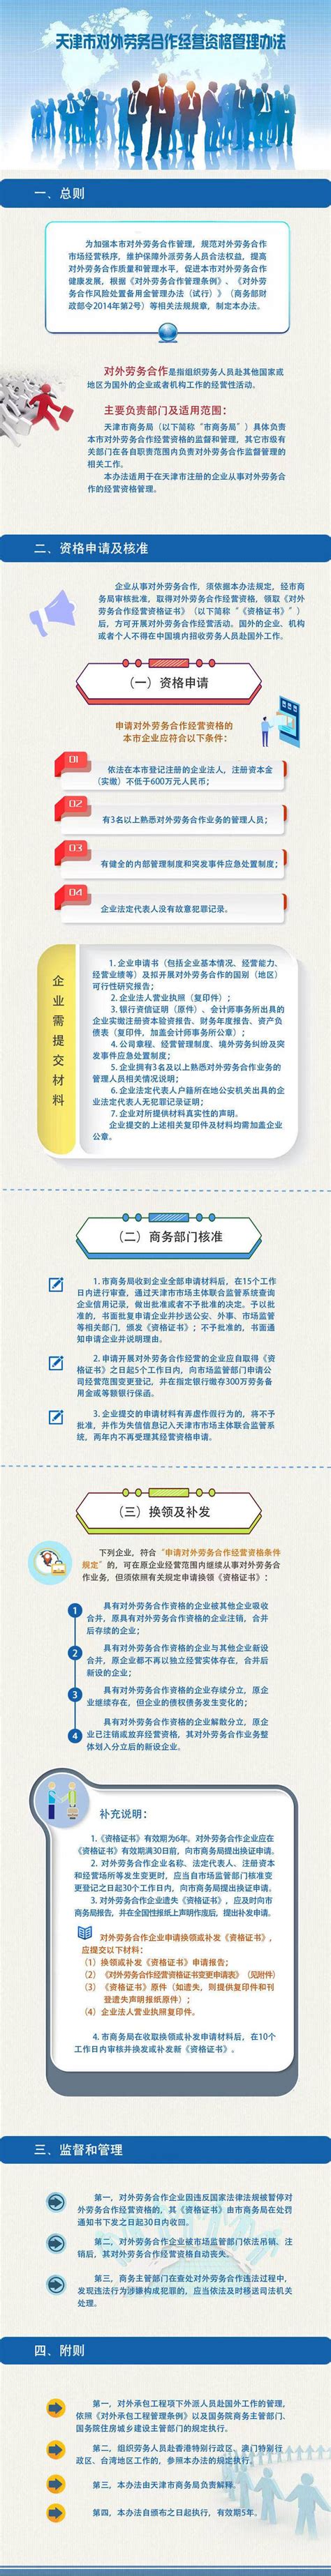 2021年中国对外劳务合作市场现状及加强对外劳务合作的对策分析[图]_智研咨询